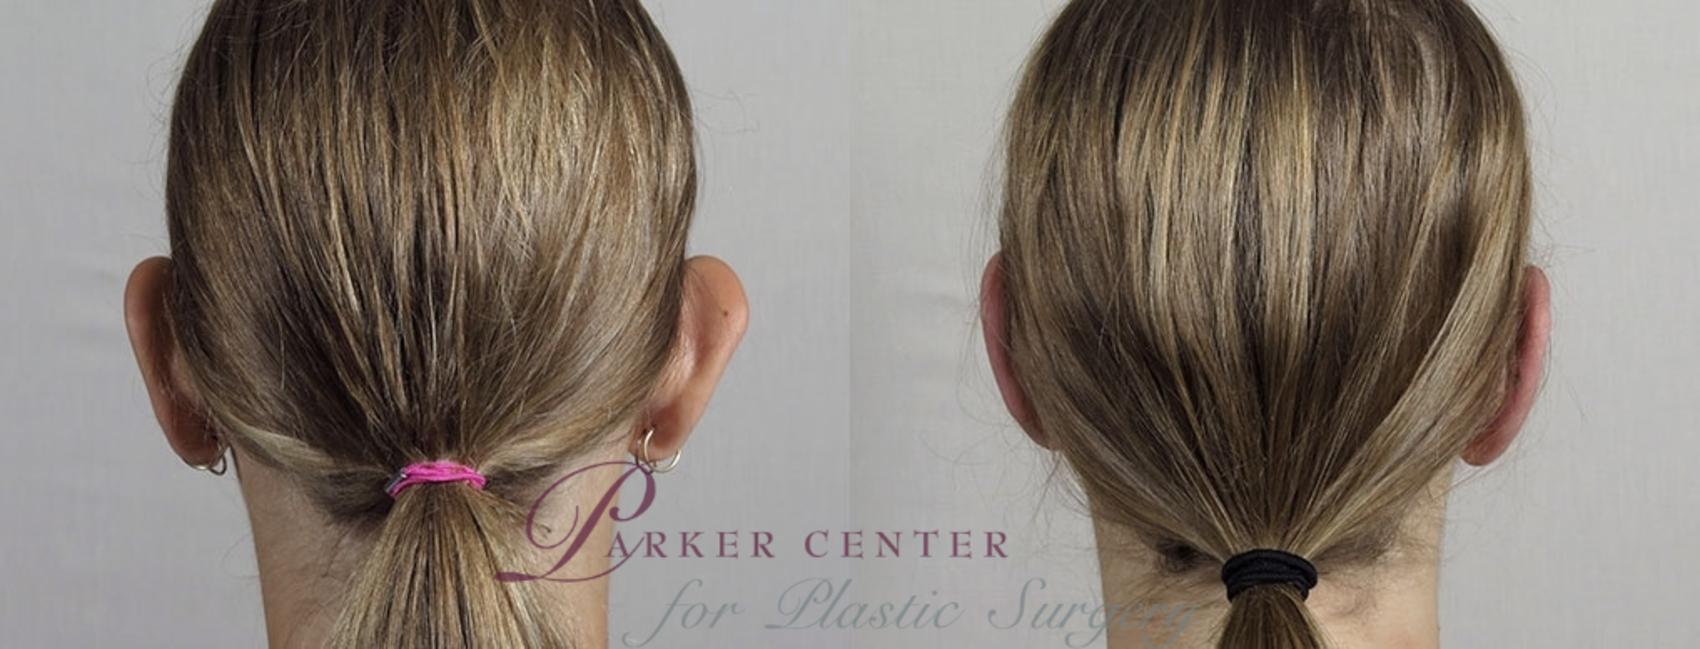 Ear Surgery Case 897 Before & After View #4 | Paramus, NJ | Parker Center for Plastic Surgery